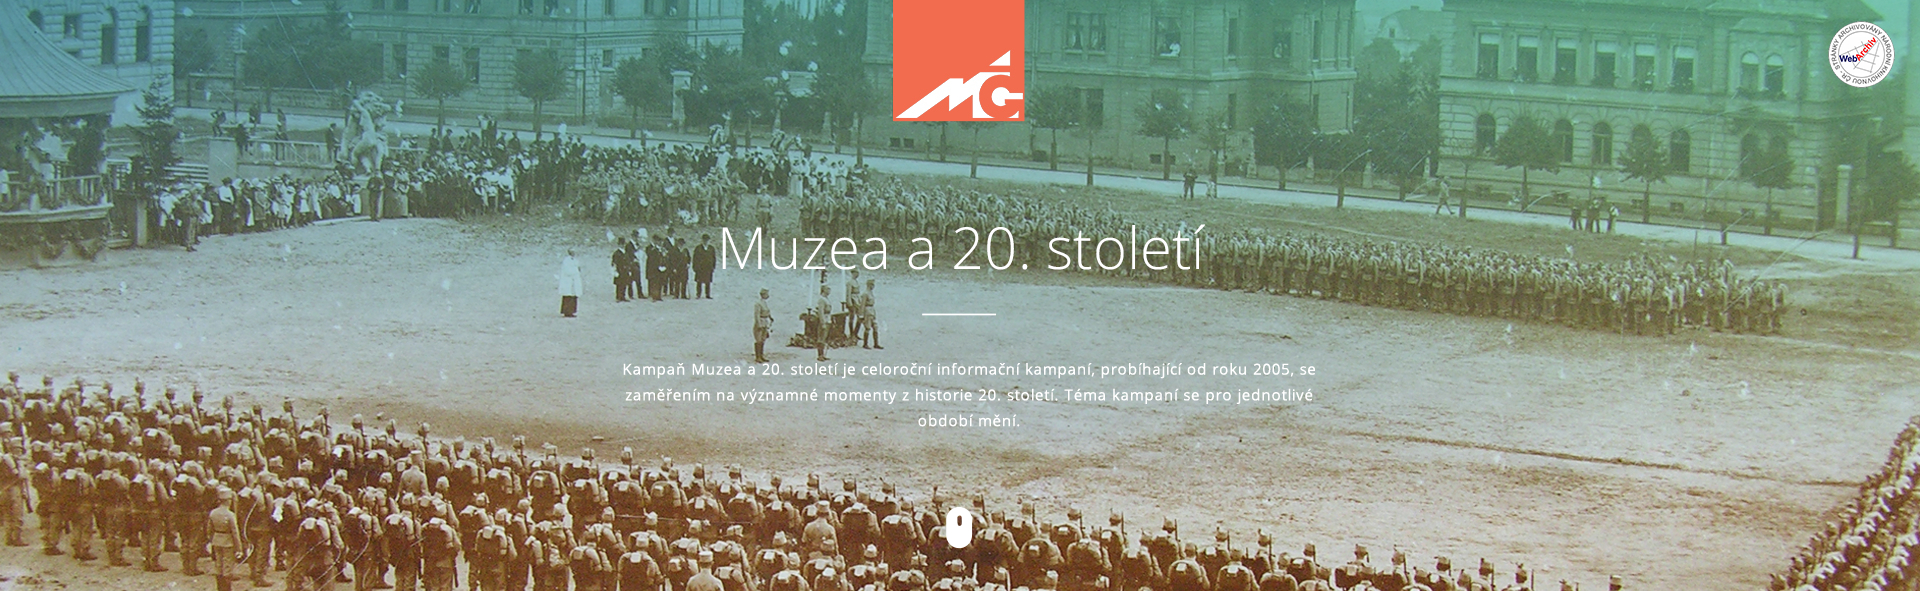 Asociace muzeí a galerií ČR -  Muzea a 20. století